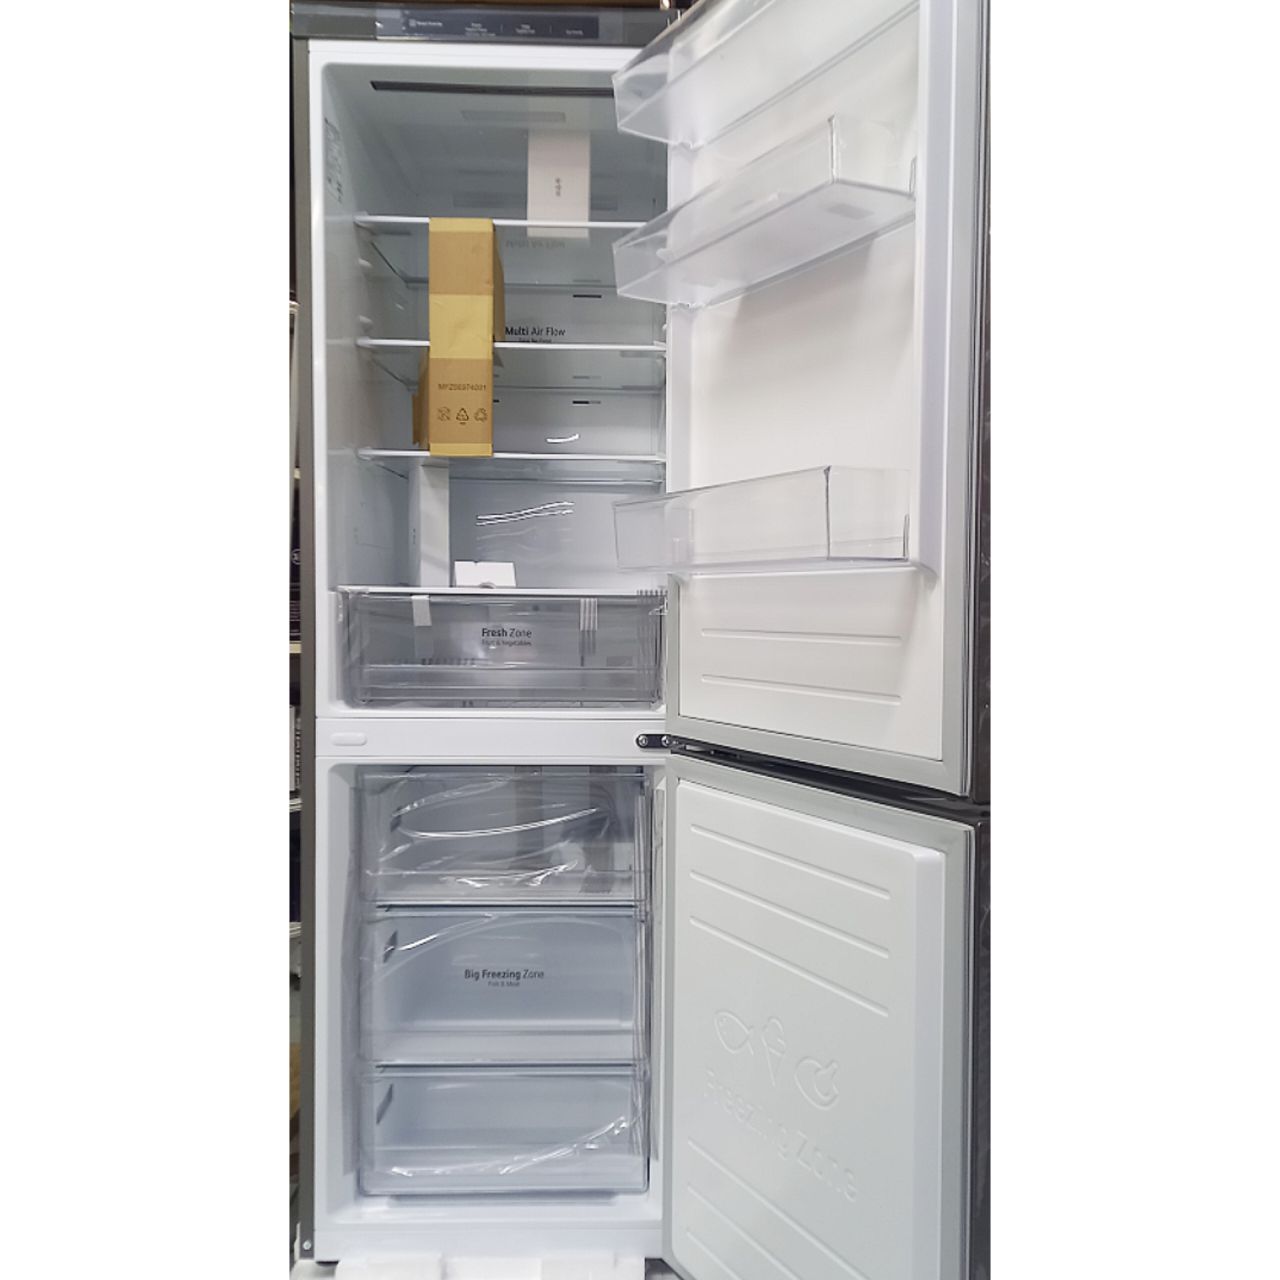 Холодильник двухкамерный LG 341 литр